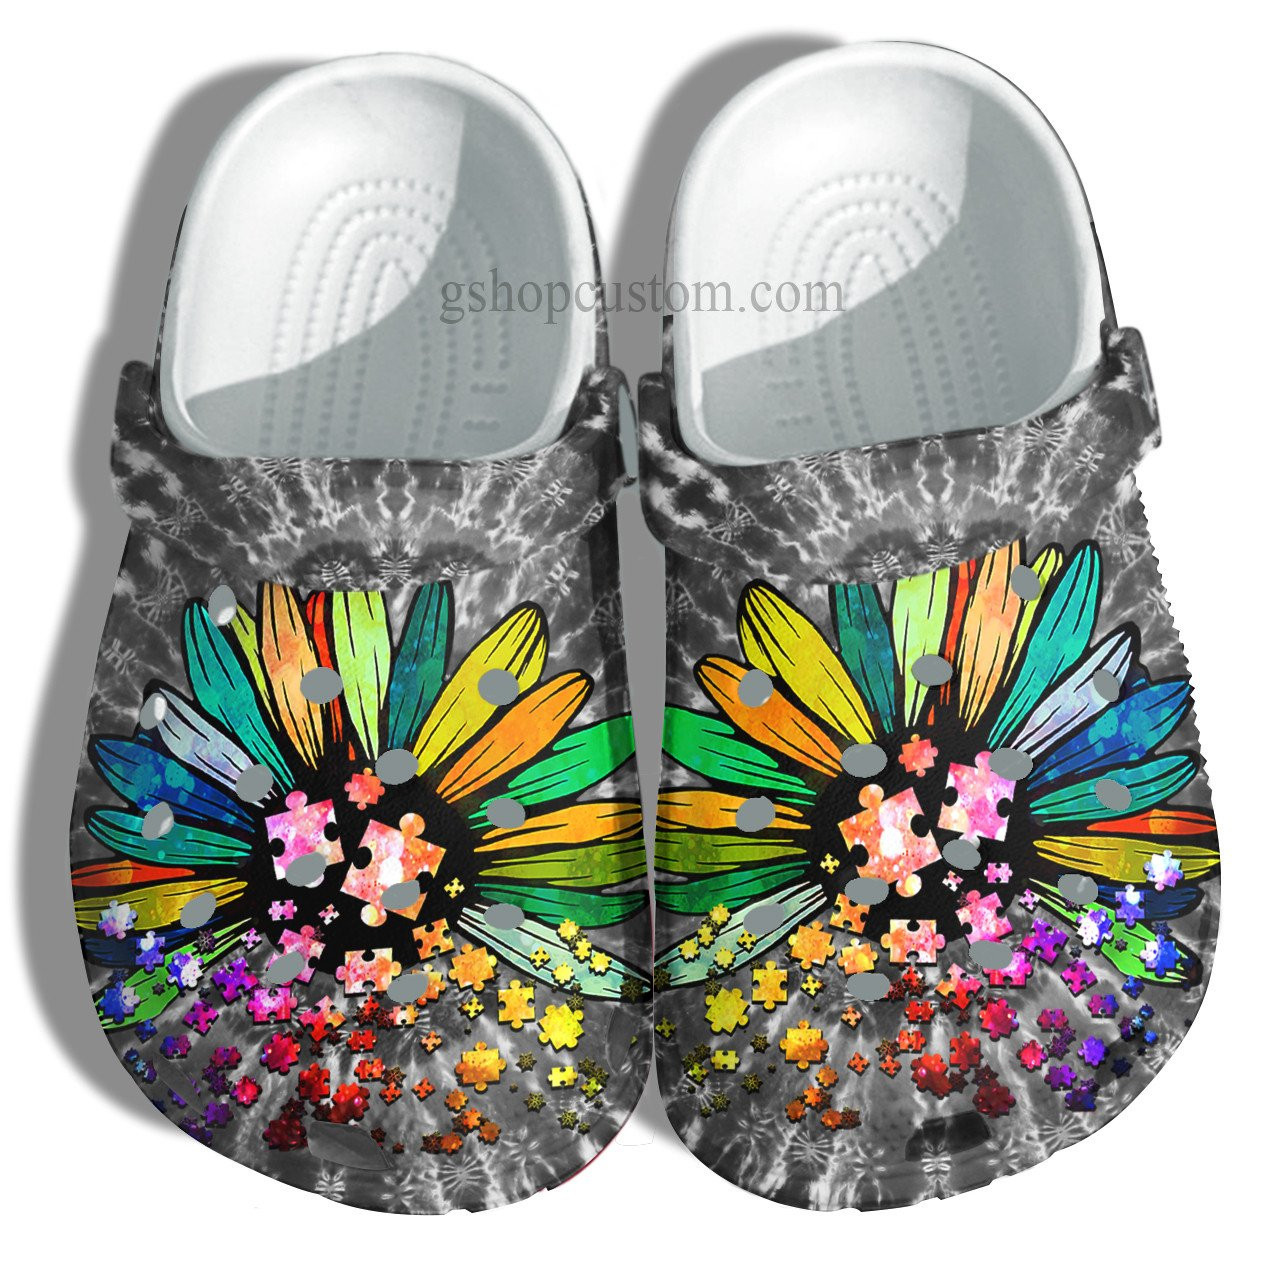 Daisy Rainbow Hippie Autism Crocs Shoes - Daisy Flower Autism Awareness Crocs Shoes Croc Clogs Gifts Women